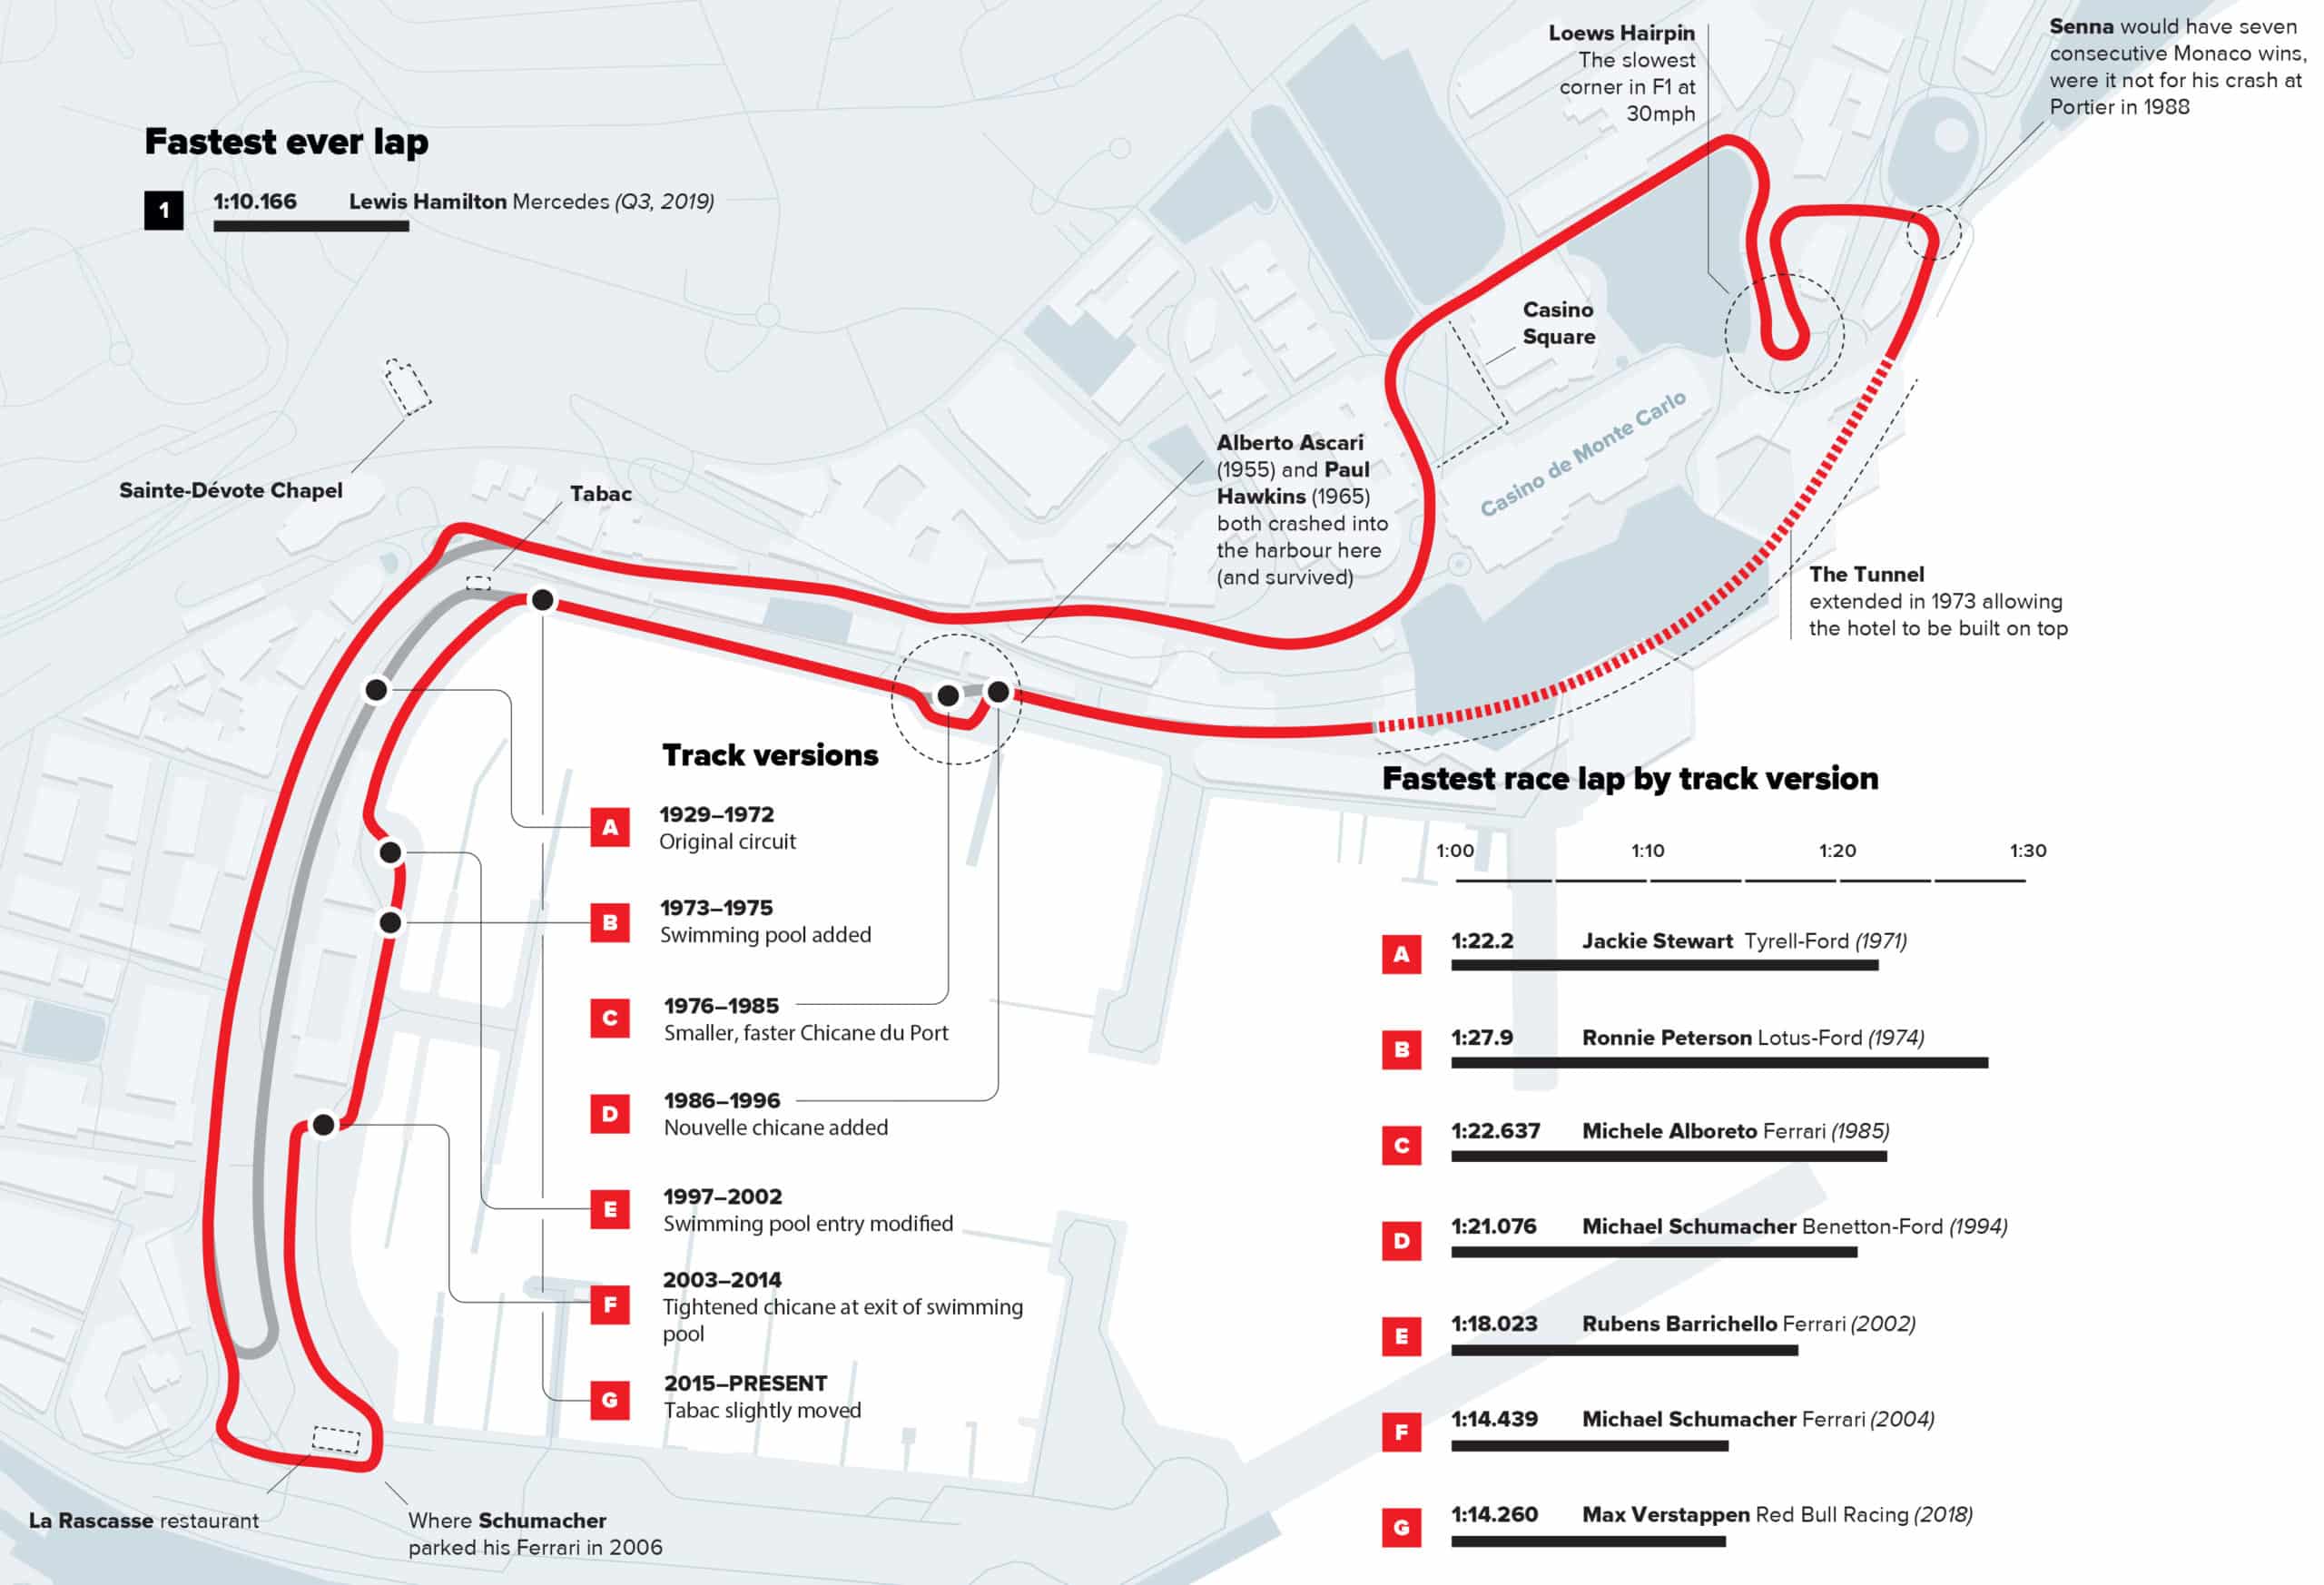 Monaco circuit infographic